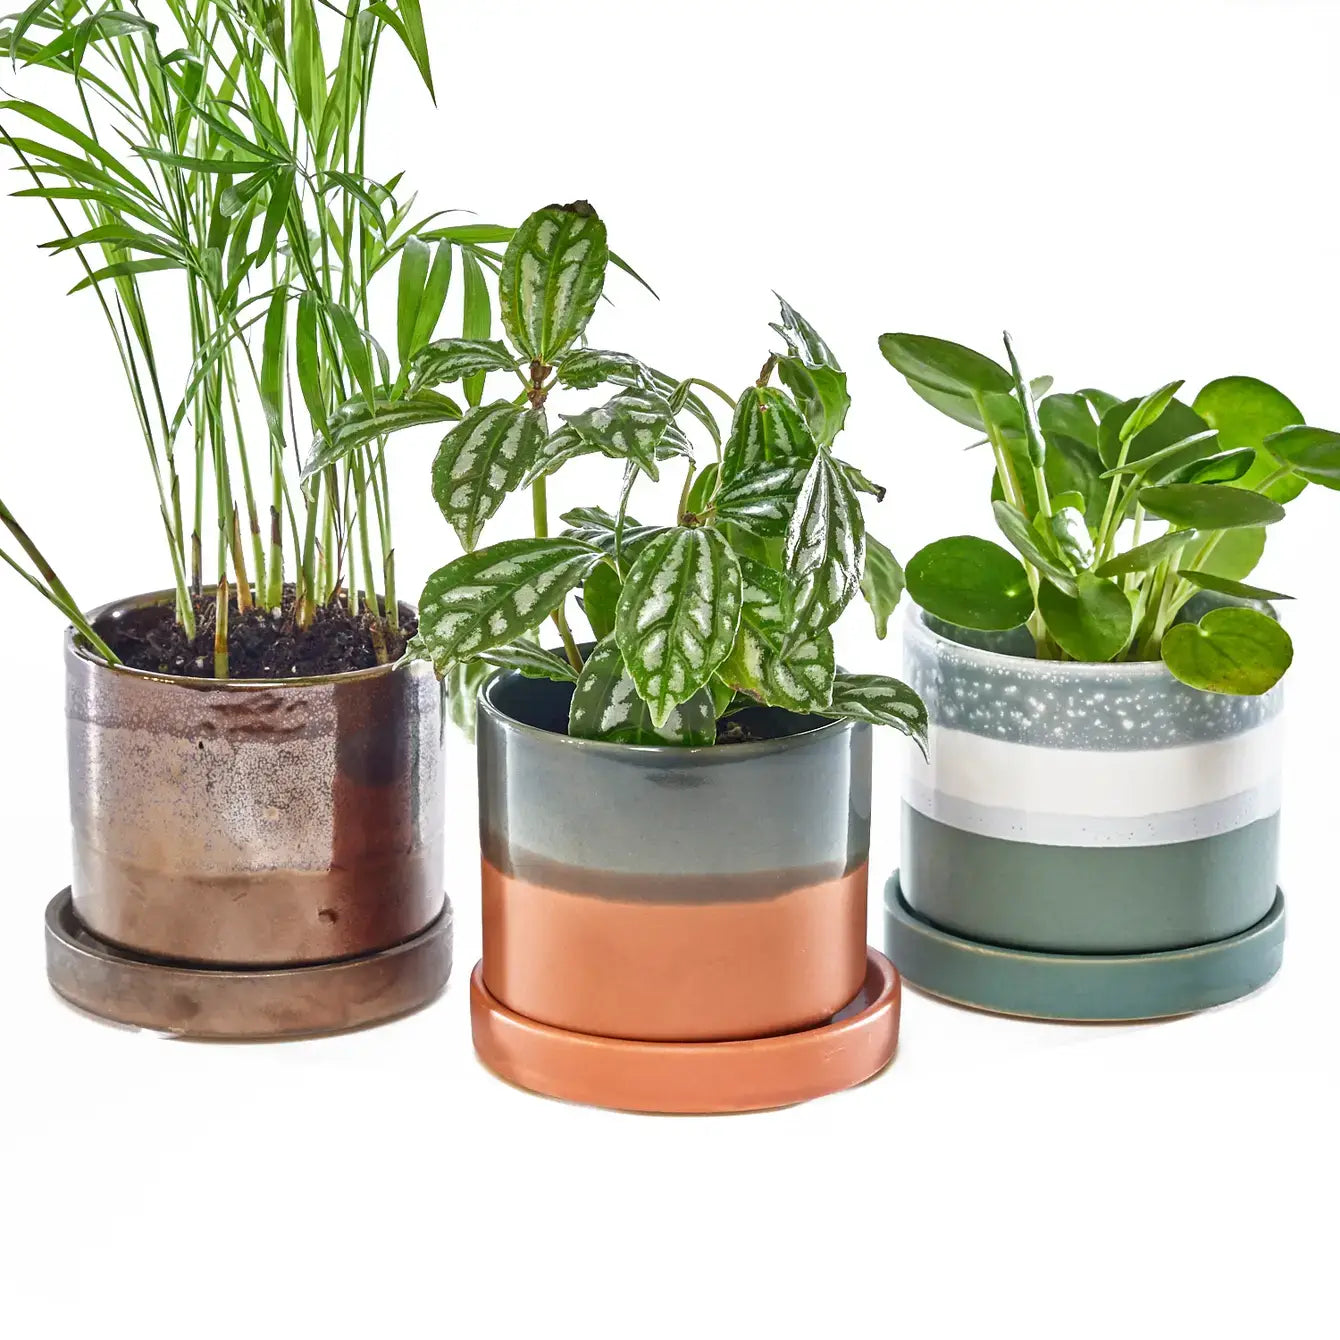 Chive - Minute Ceramic Plant Pots Indoor: Boombastic / 5"